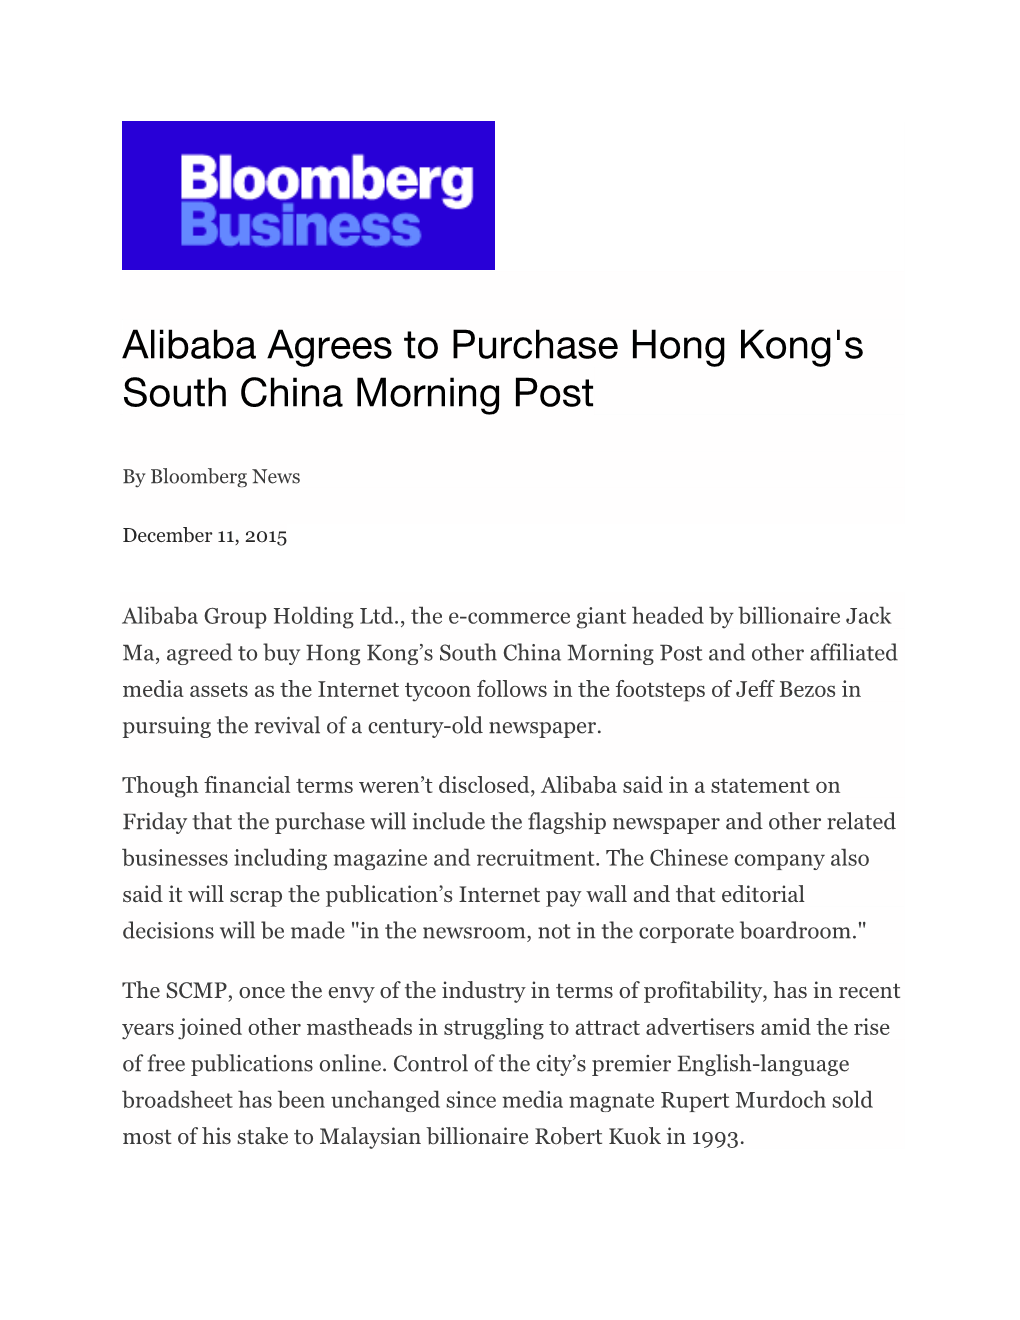 Alibaba Agrees to Purchase Hong Kong's South China Morning Post